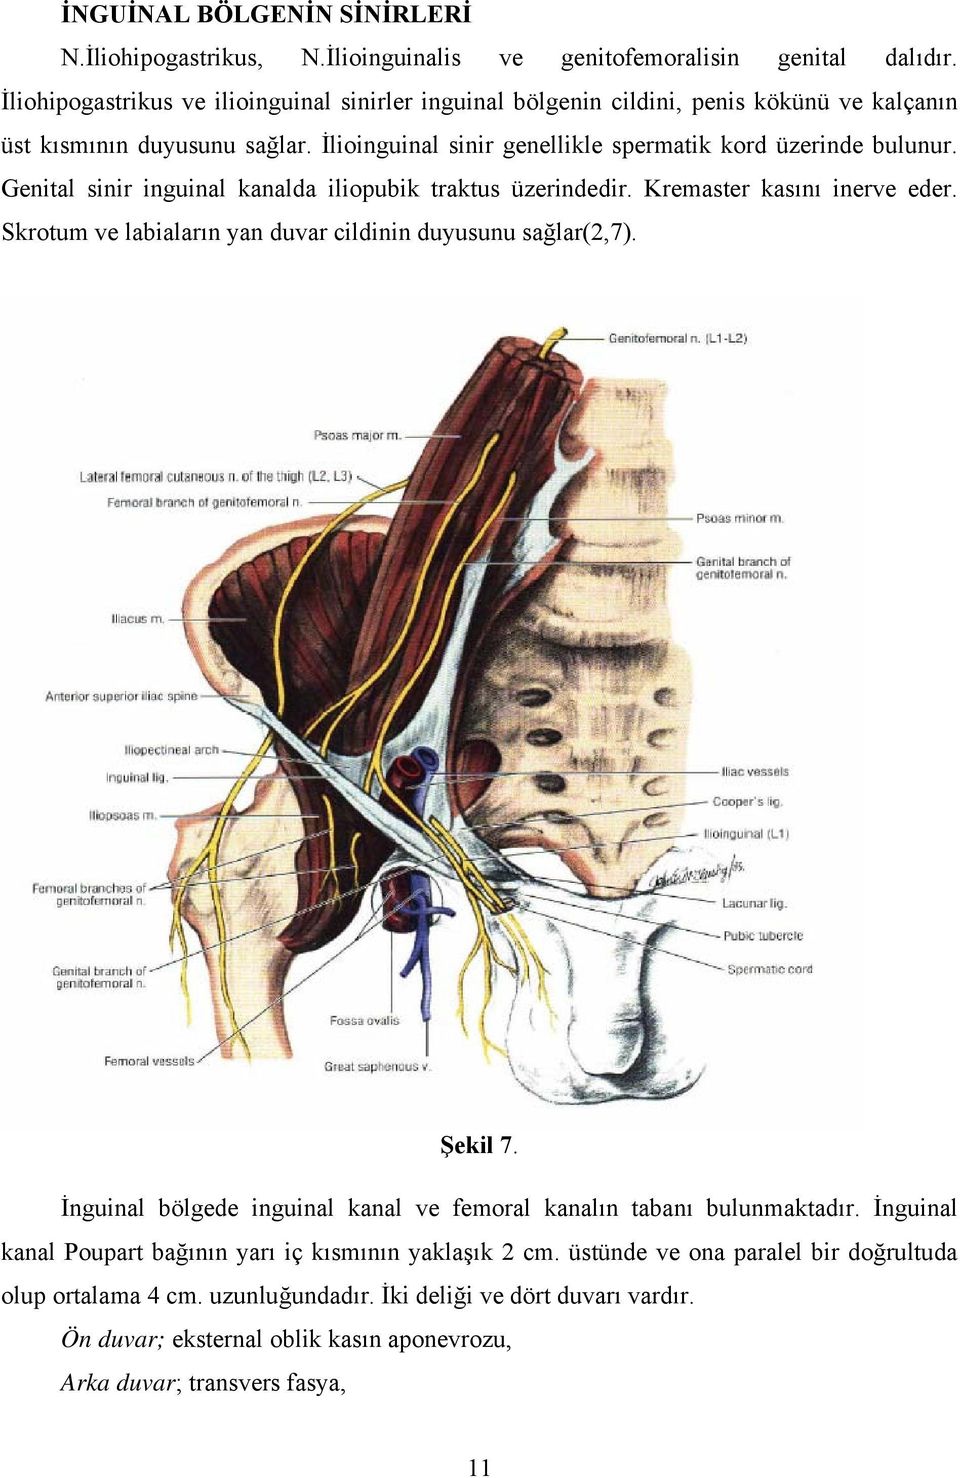 Genital sinir inguinal kanalda iliopubik traktus üzerindedir. Kremaster kasını inerve eder. Skrotum ve labiaların yan duvar cildinin duyusunu sağlar(2,7). Şekil 7.